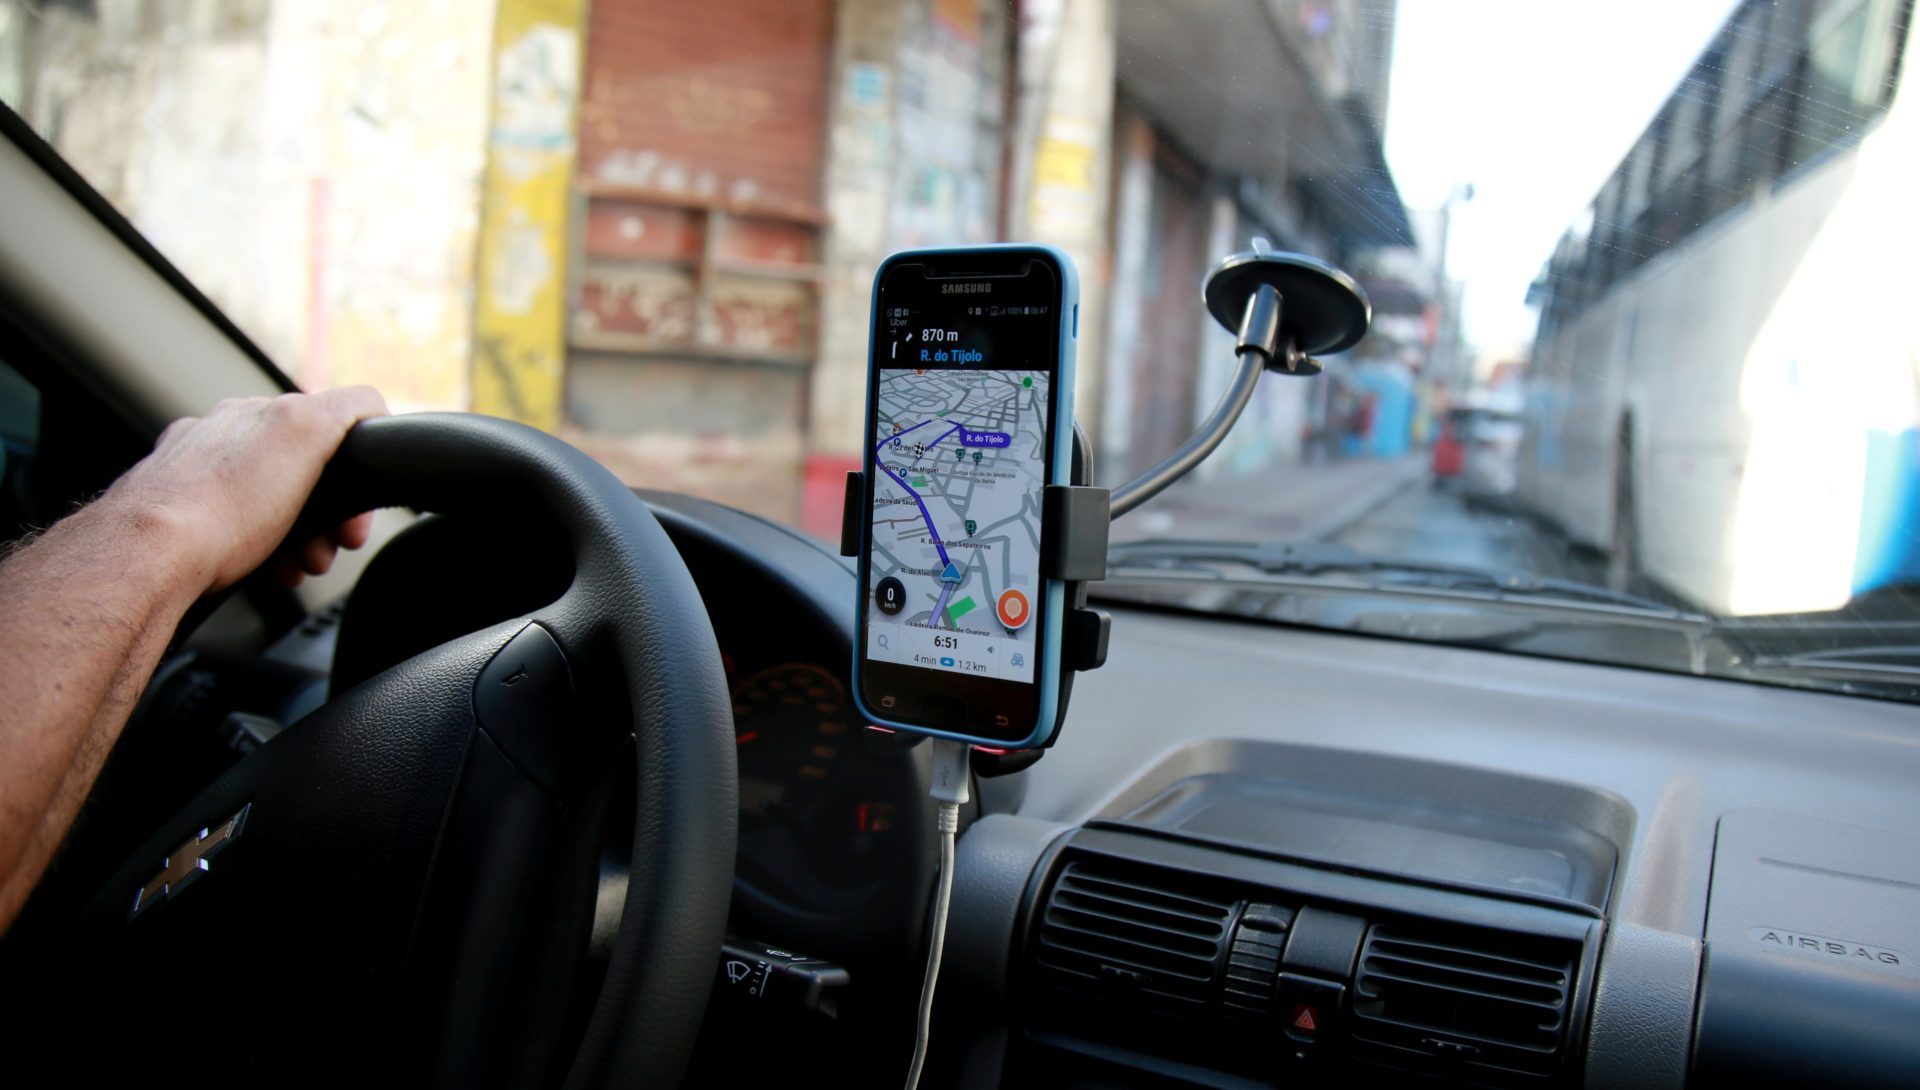 Tribunal brasileiro multa Uber em 190 milhões de euros por “danos morais”